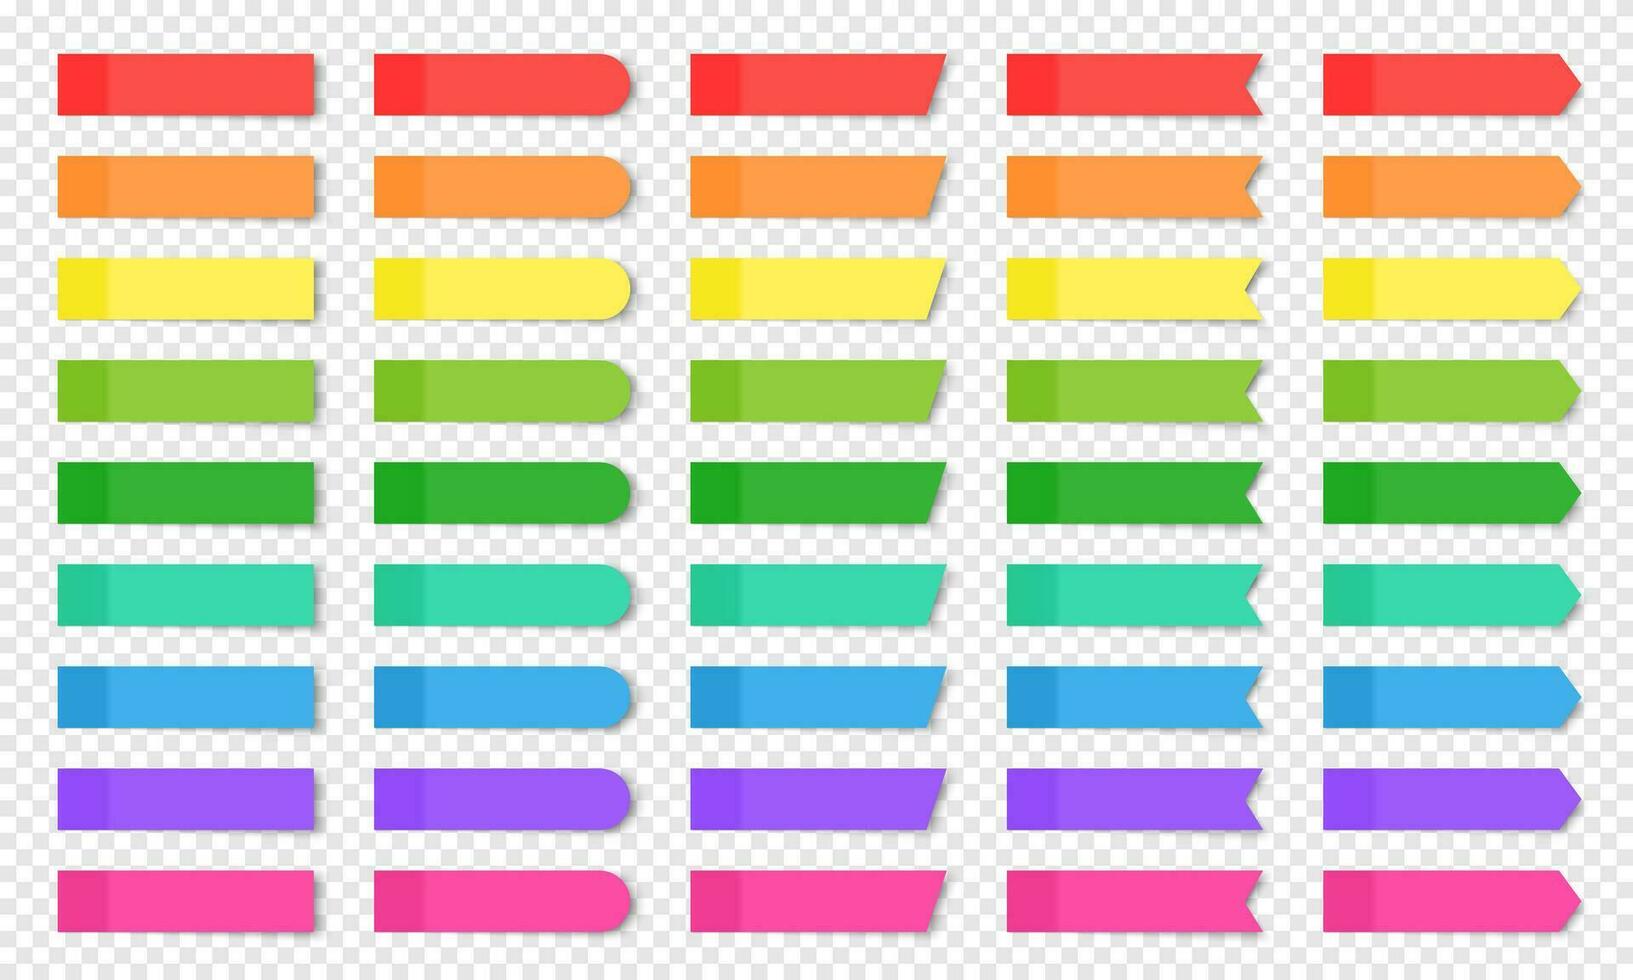 conjunto de de colores realista pegajoso notas aislado. vector